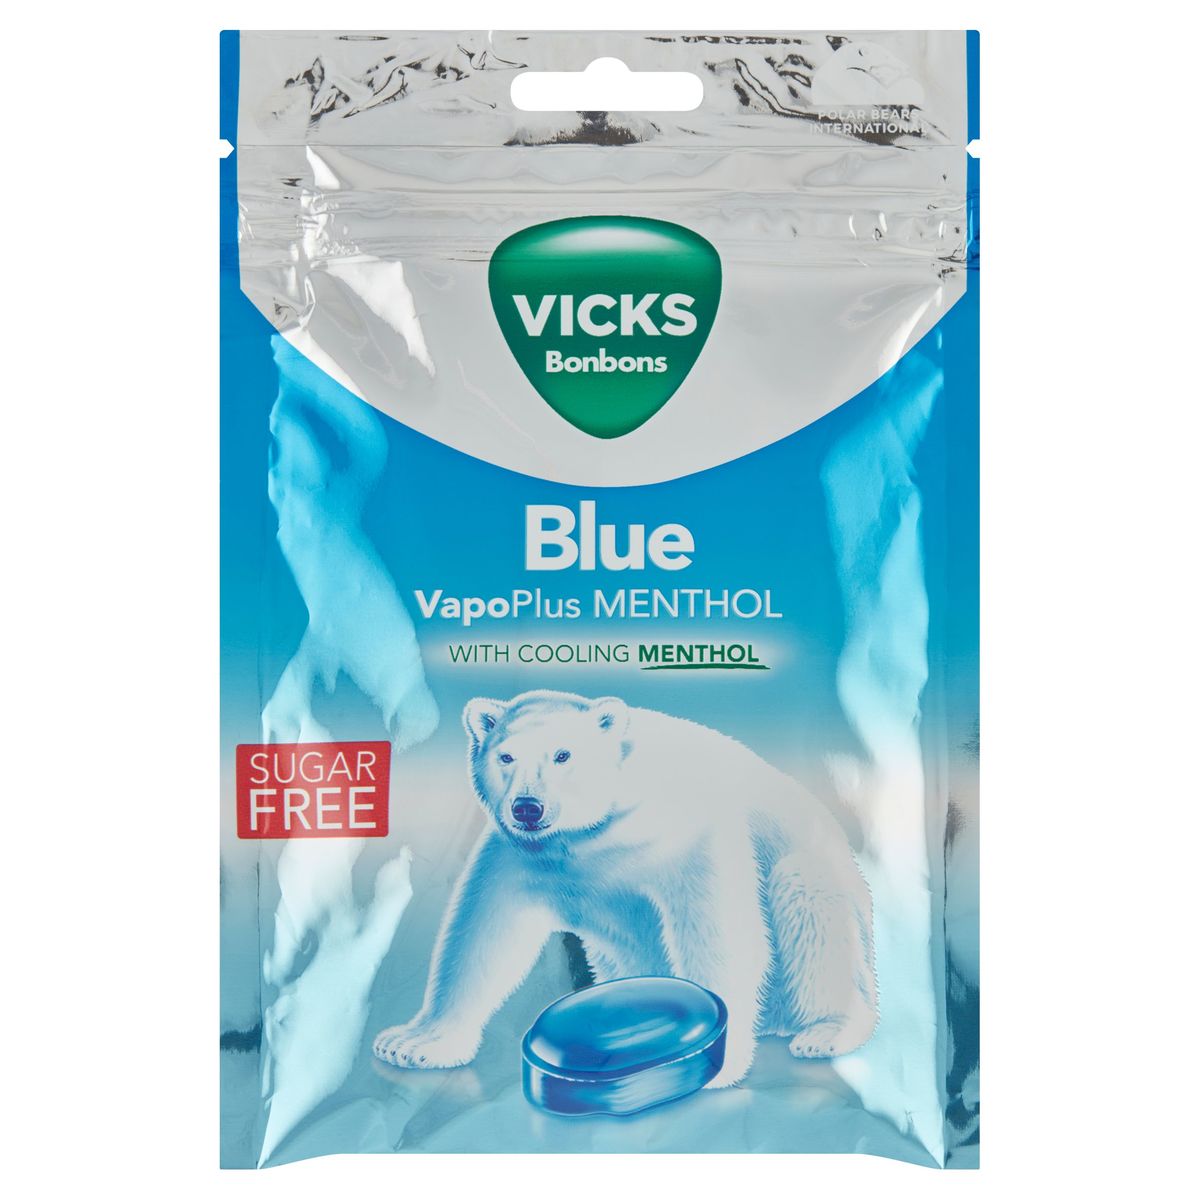 Vicks Bonbons Blue VapoPlus Menthol 72 g